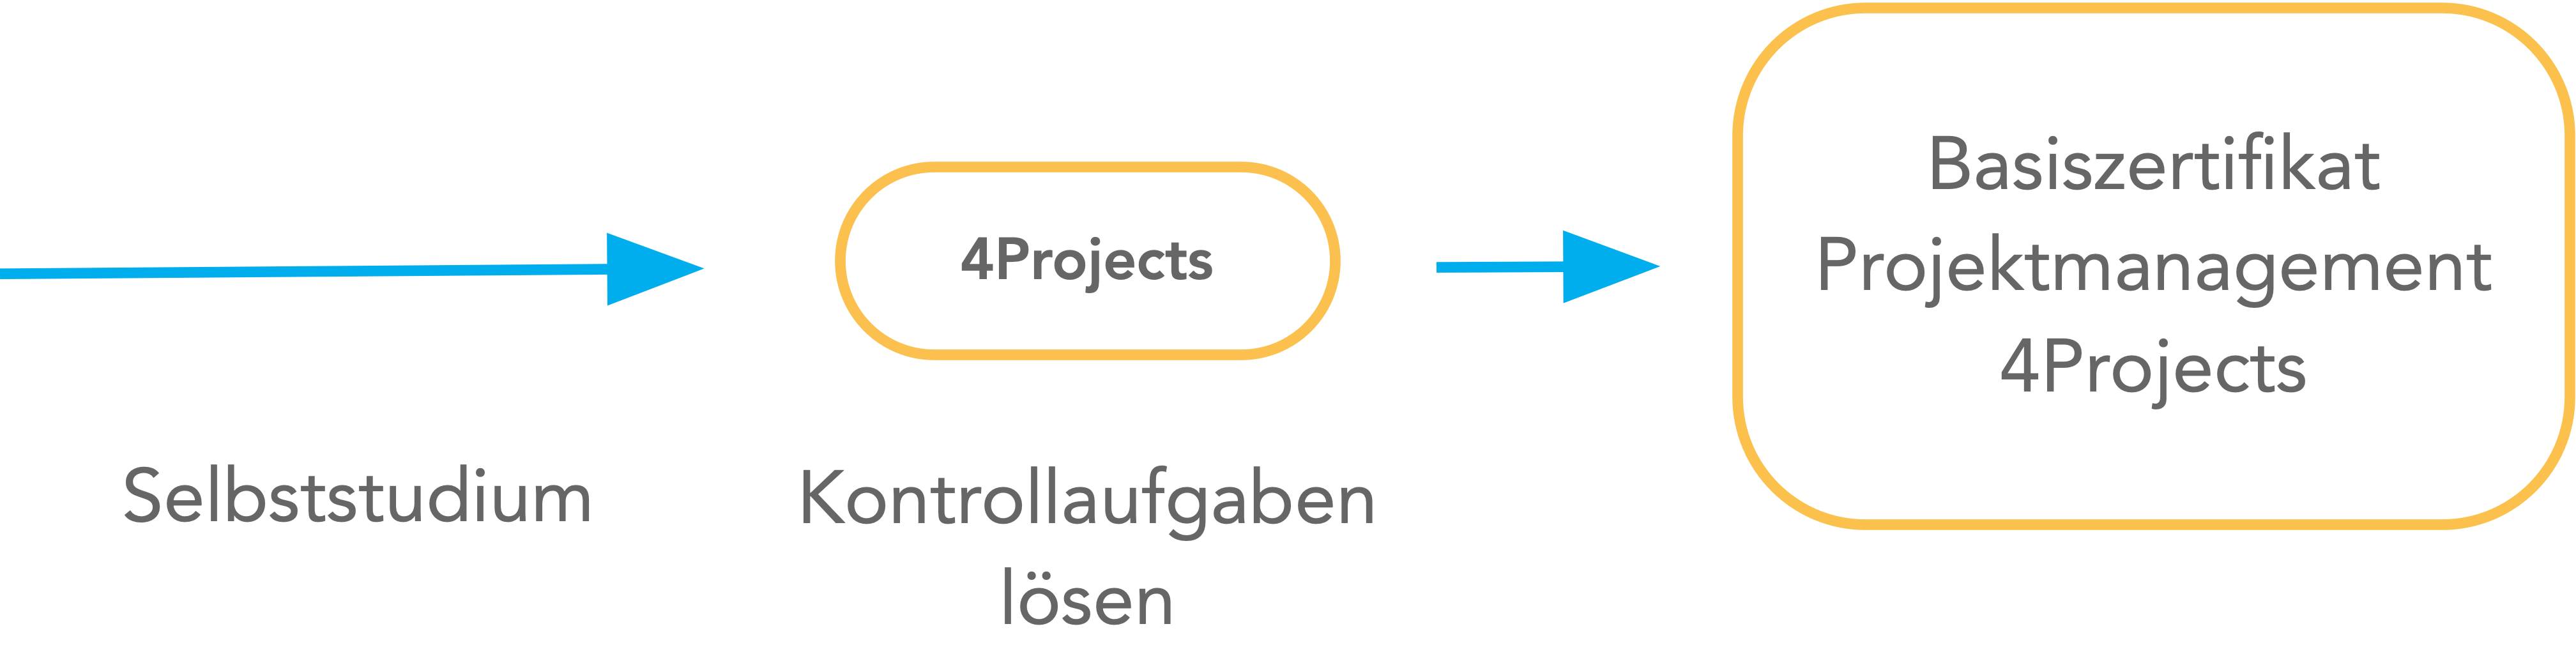 Lernmodell E-Learning Basiszertifikat Projektmanagement 4Projects